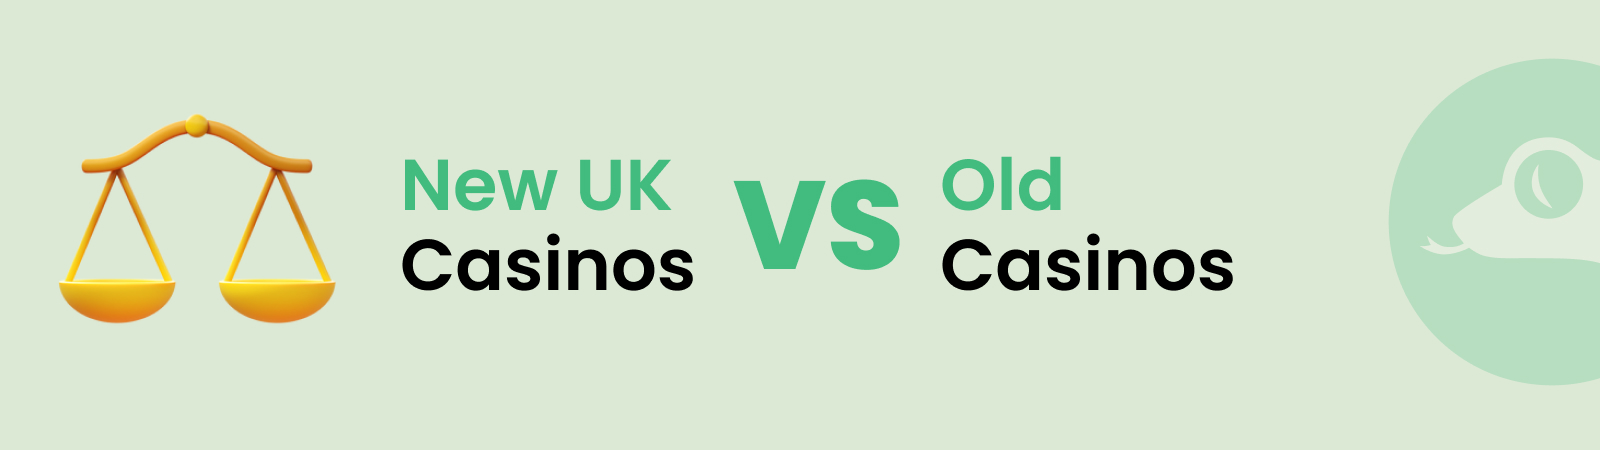 new uk casinos vs old